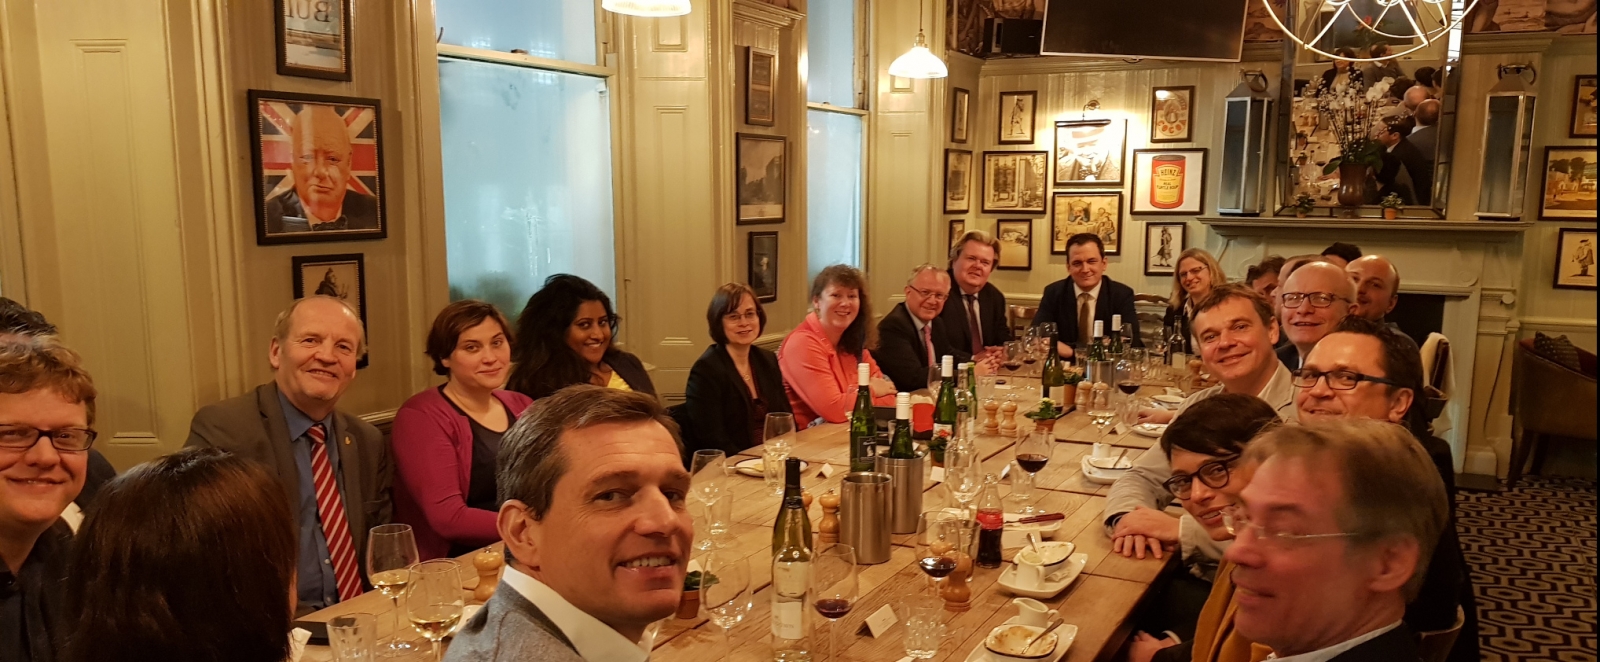 Staatssekretärin Milz sitzt mit dem Sportausschuss in London beim Essen an einem großen Tisch zusammen. An Wänden hängen überall eingerahmte Bilder.